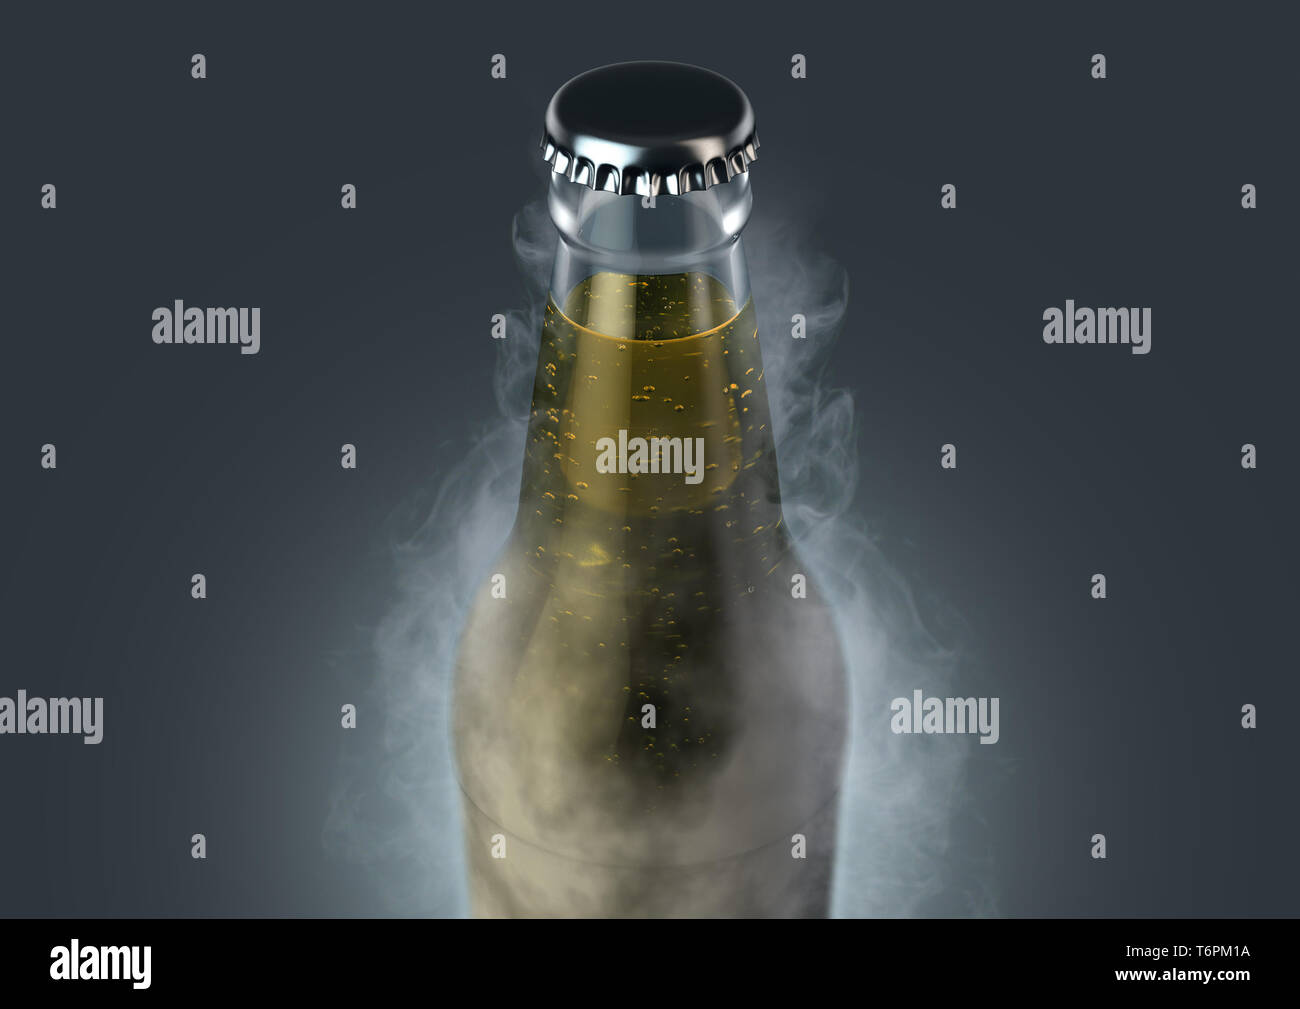 Eine eisige Kälte aus klarem Glas Bier Flasche mit Reif bedeckt und strahlt Eis Sublimation auf einem isolierten dunklen Studio Hintergrund - 3D-Rendering Stockfoto